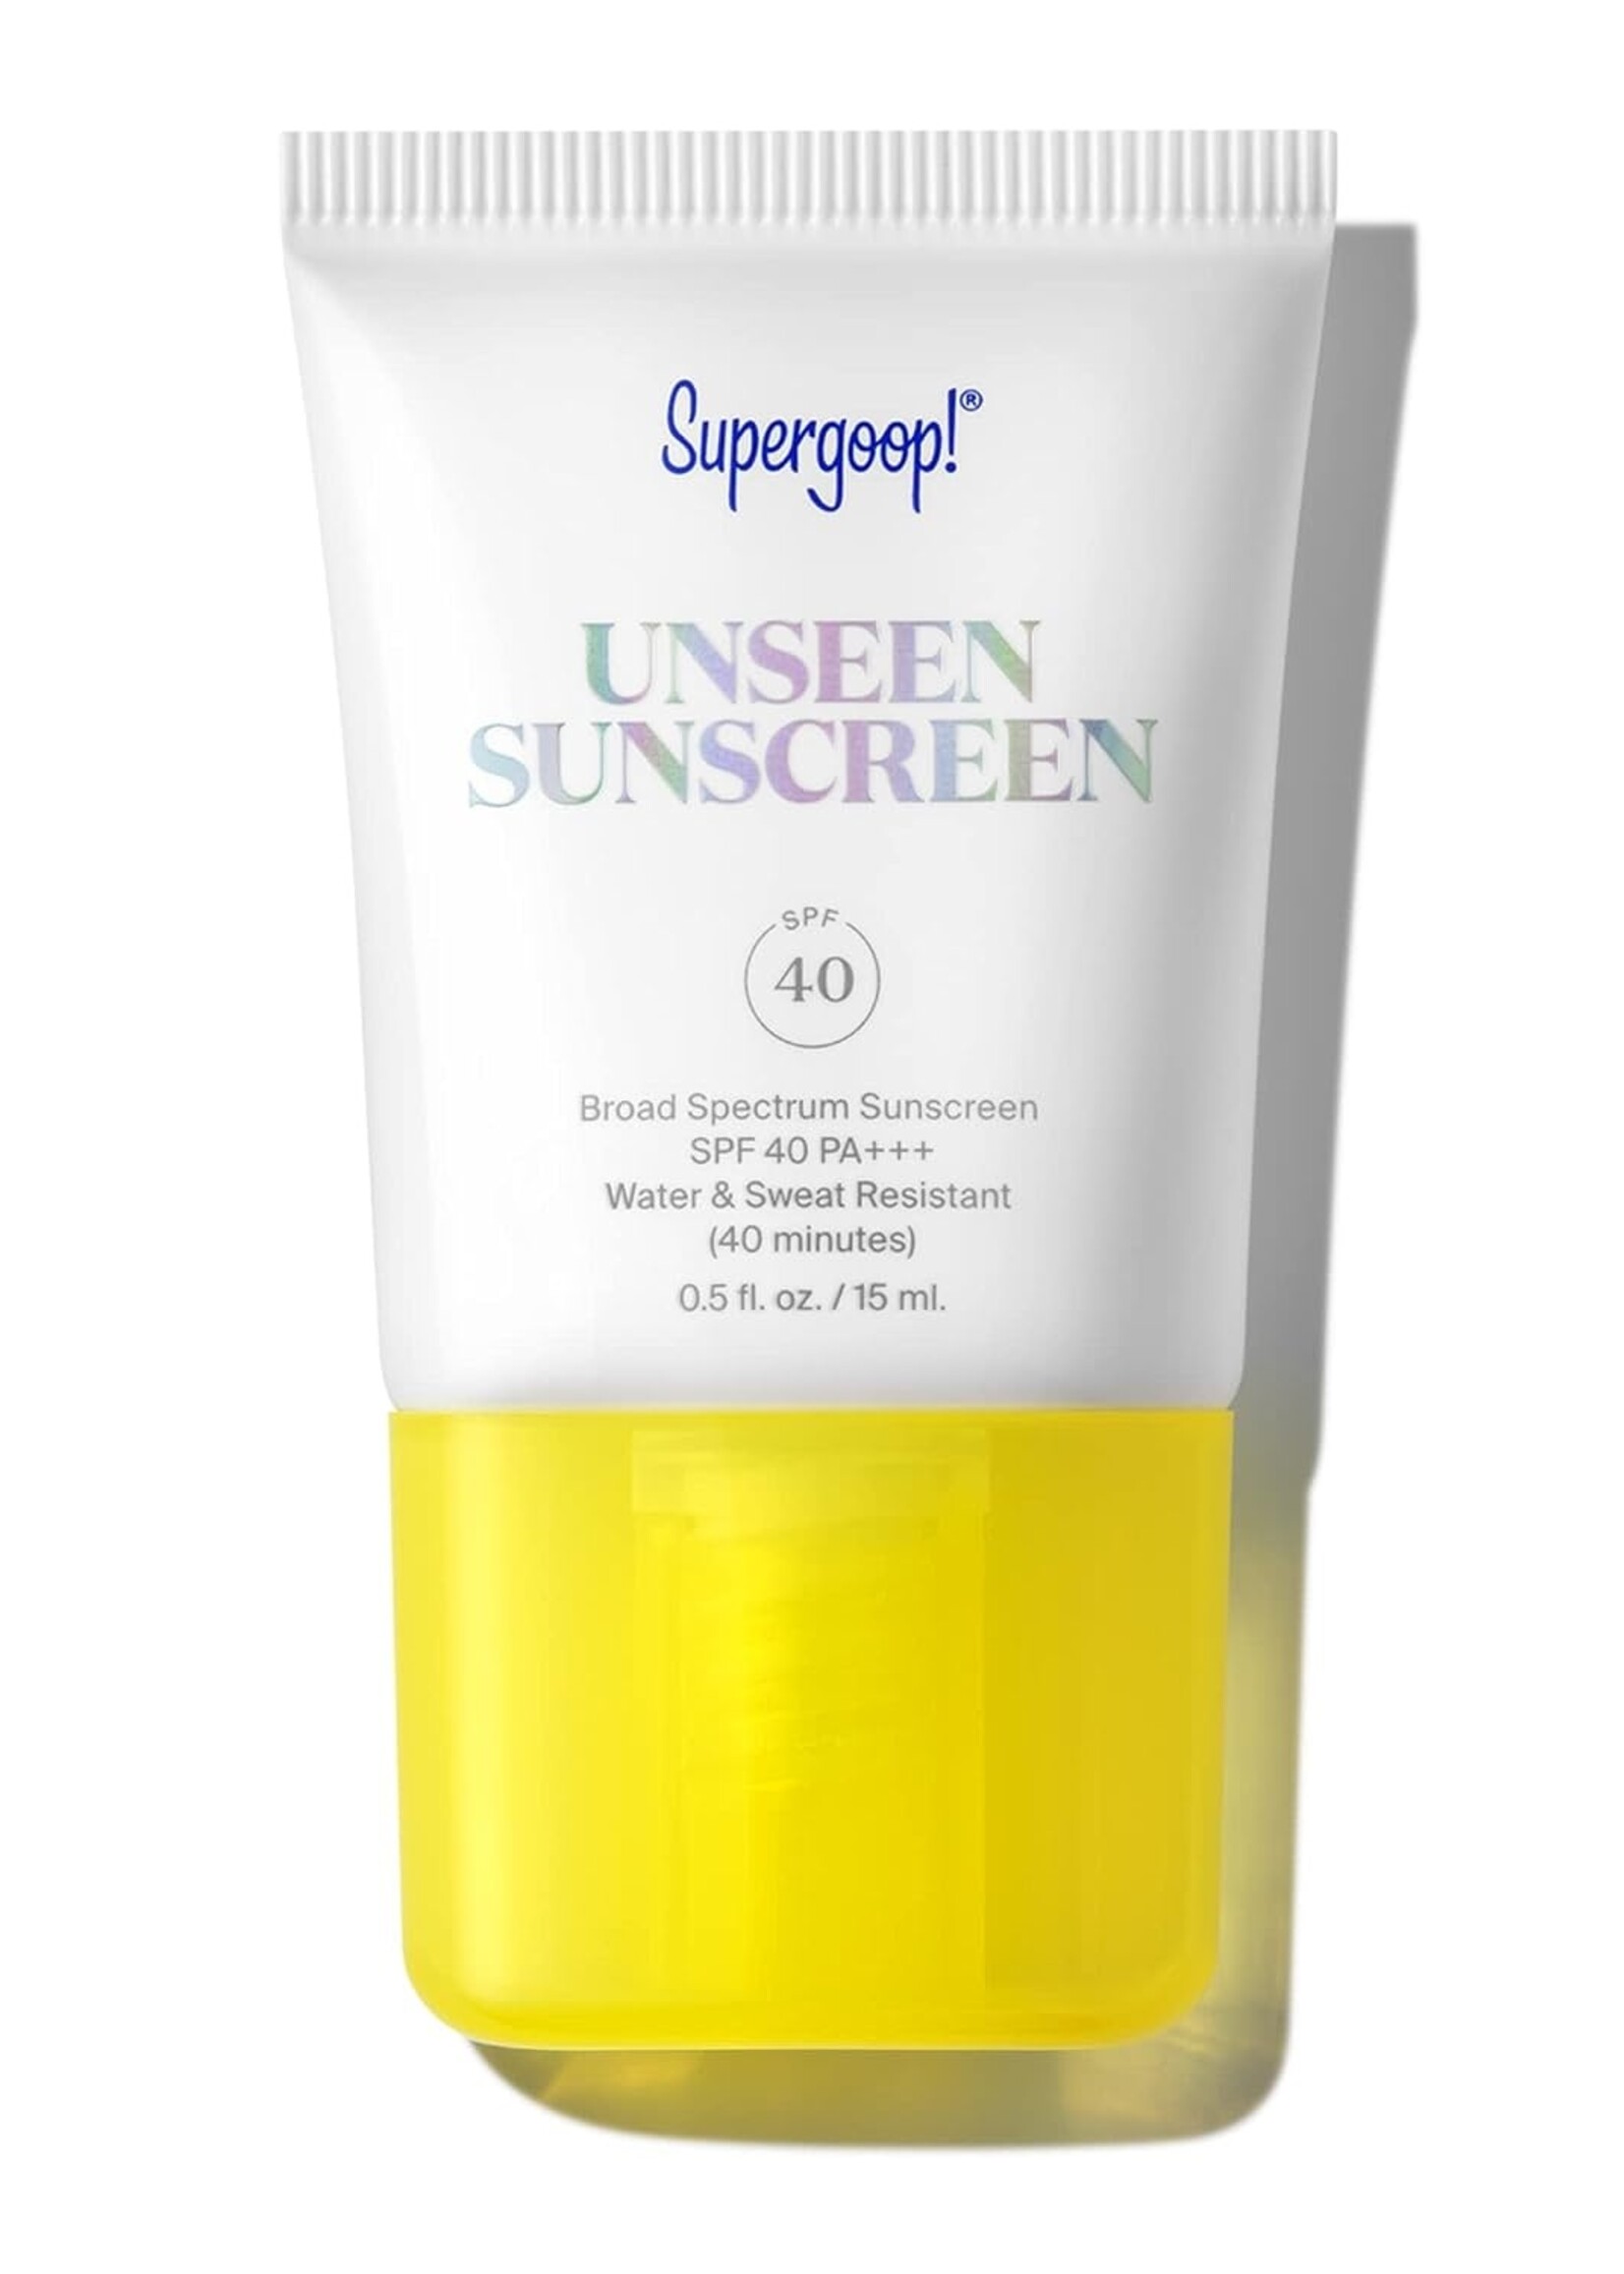 Supergoop! Unseen Sunscreen SPF 40 - 0.5 fl. oz